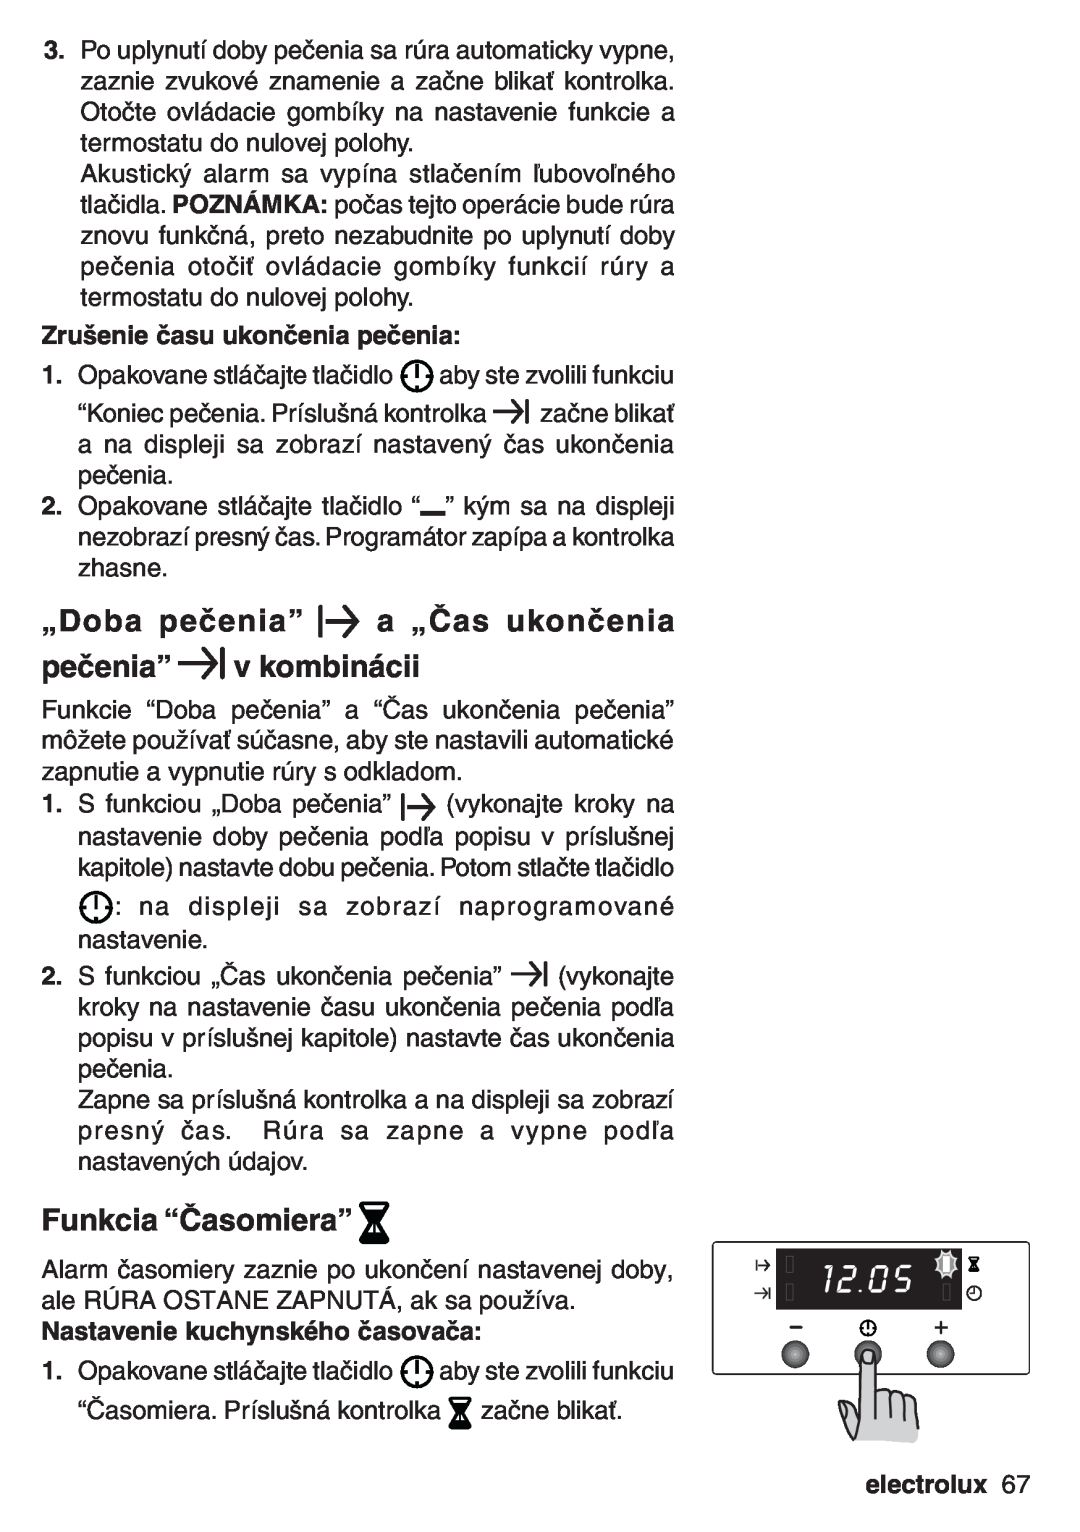 Electrolux EOB 53003 user manual „Doba pečenia” a „Čas ukončenia pečenia” v kombinácii, Funkcia “Časomiera”, electrolux 